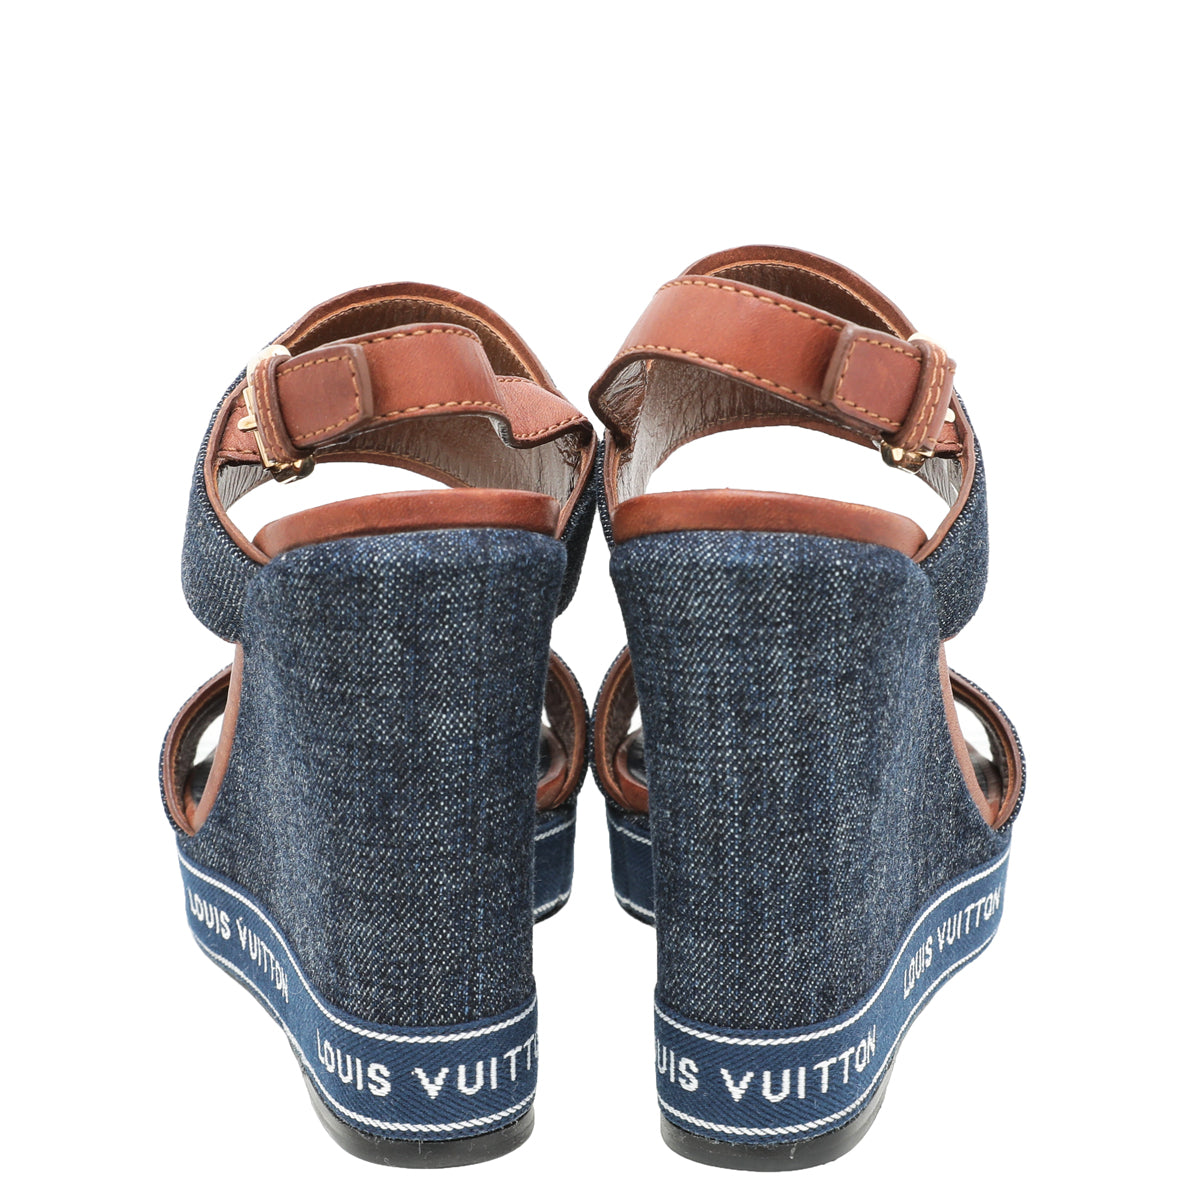 Louis Vuitton, Shoes, Authentic Louis Vuitton New Denim Ocean Wedges